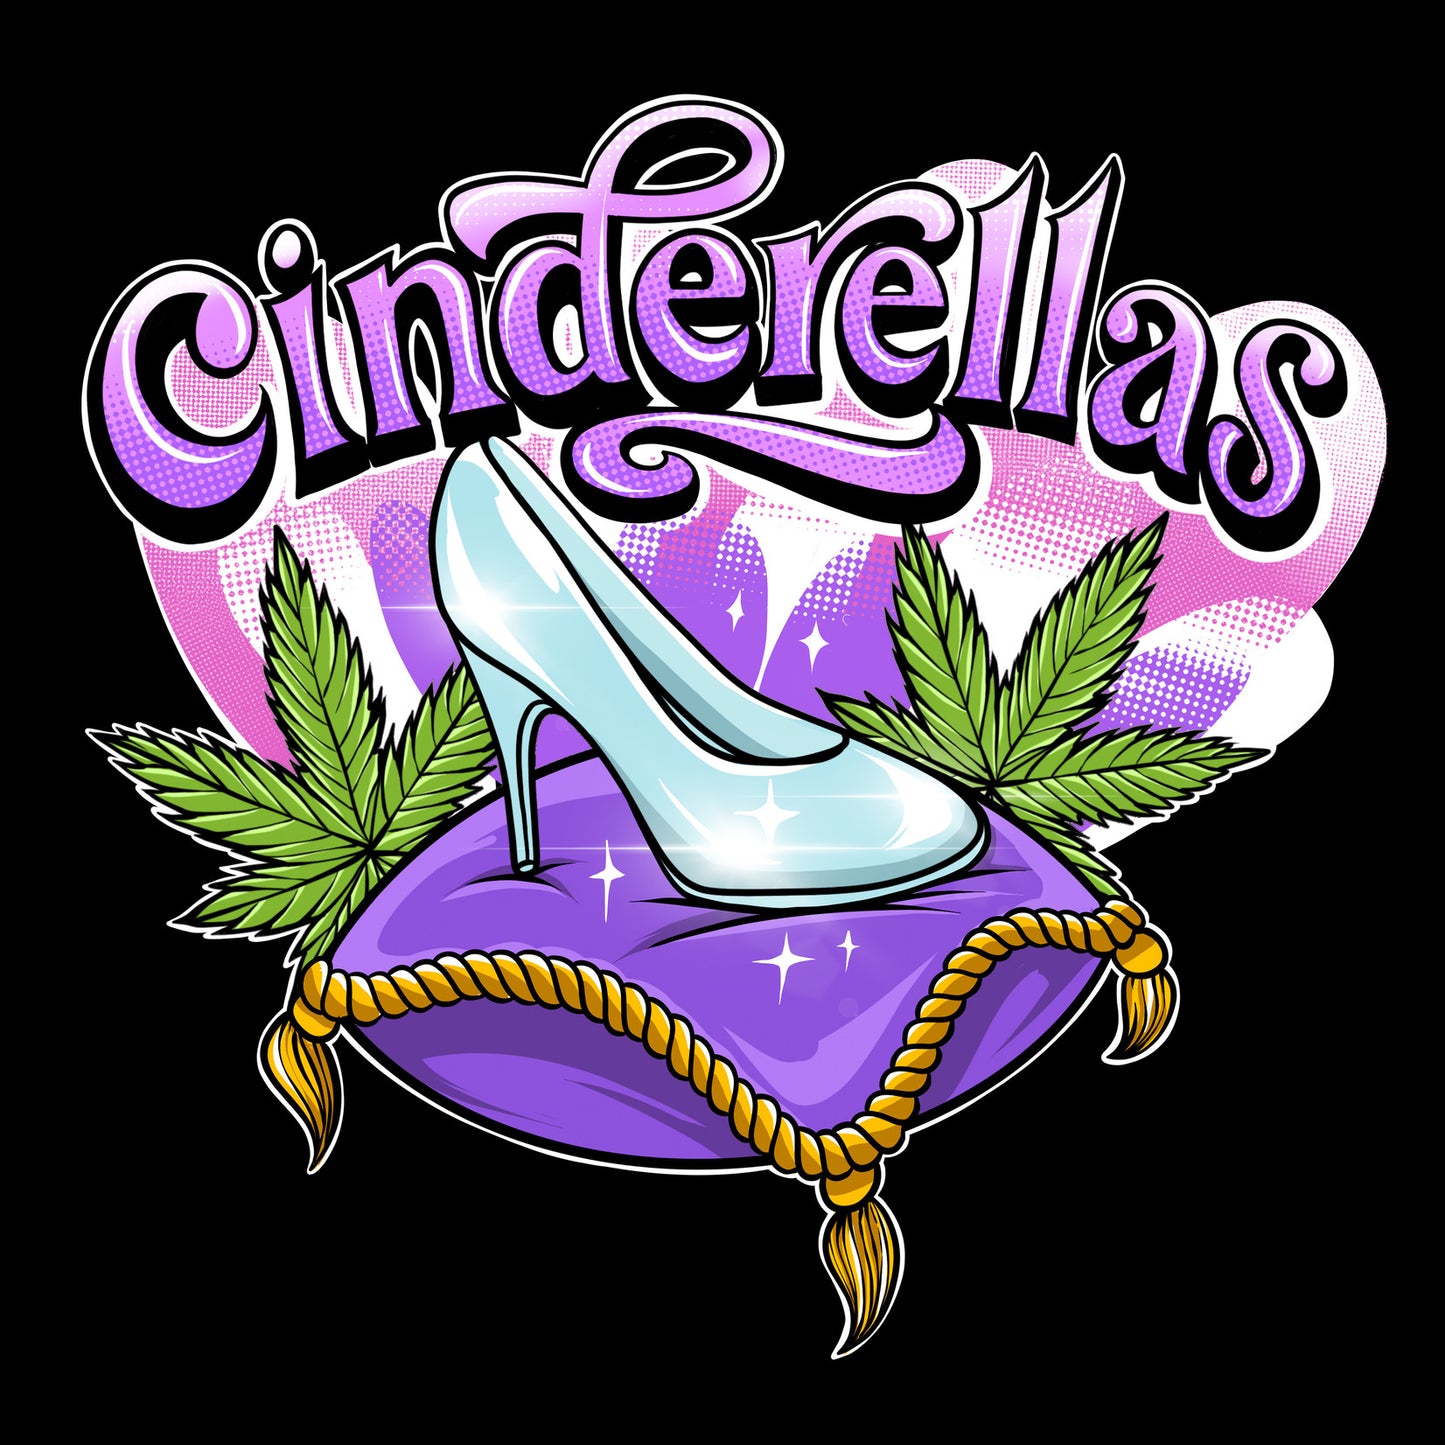 Cinderella's